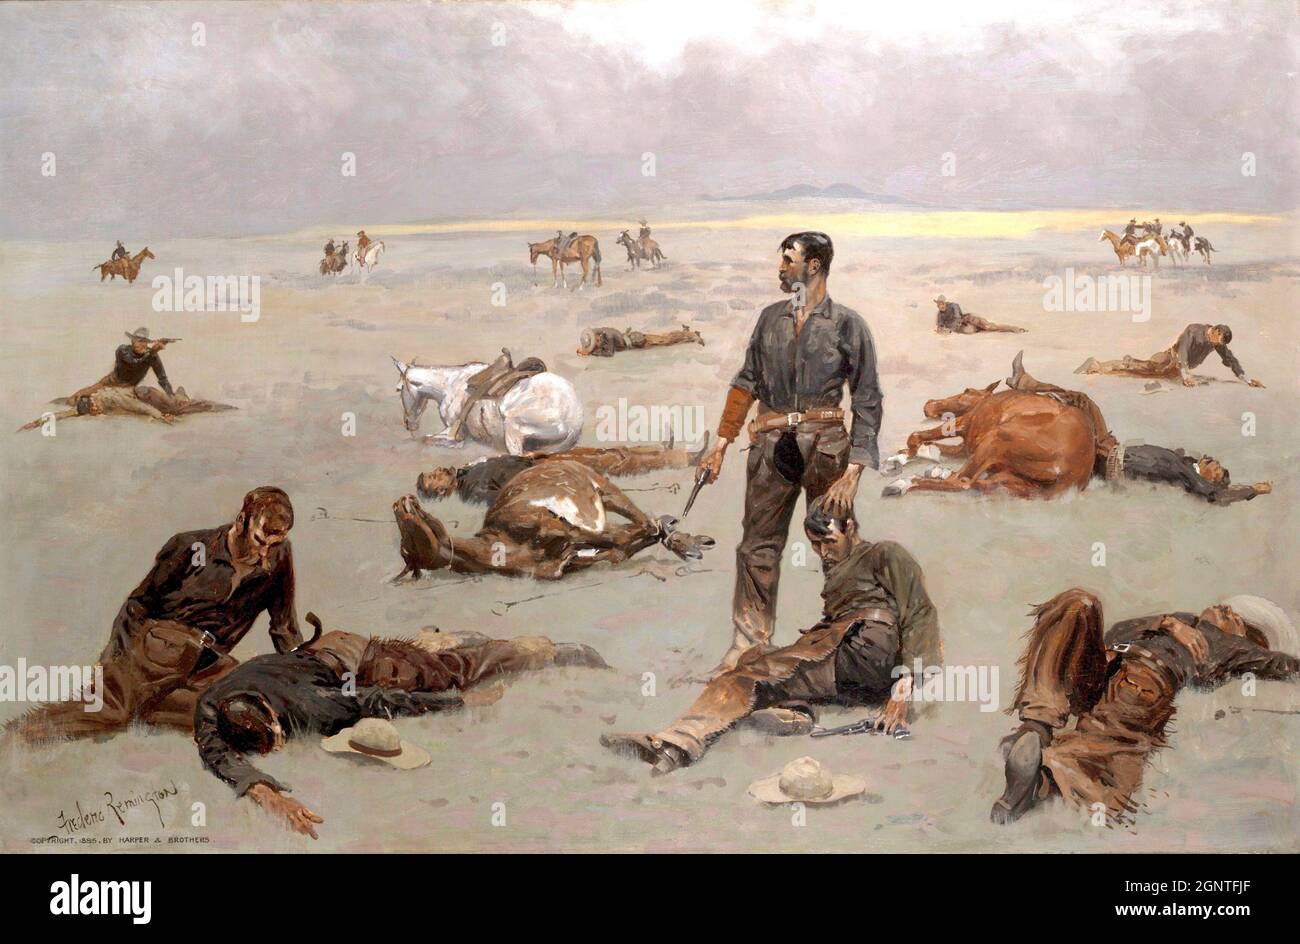 Frederick Remington artwork - che cosa ha costato una mucca senza marchio - Gunfight lascia molti morti e feriti in disputa sulla proprietà del bestiame. Foto Stock